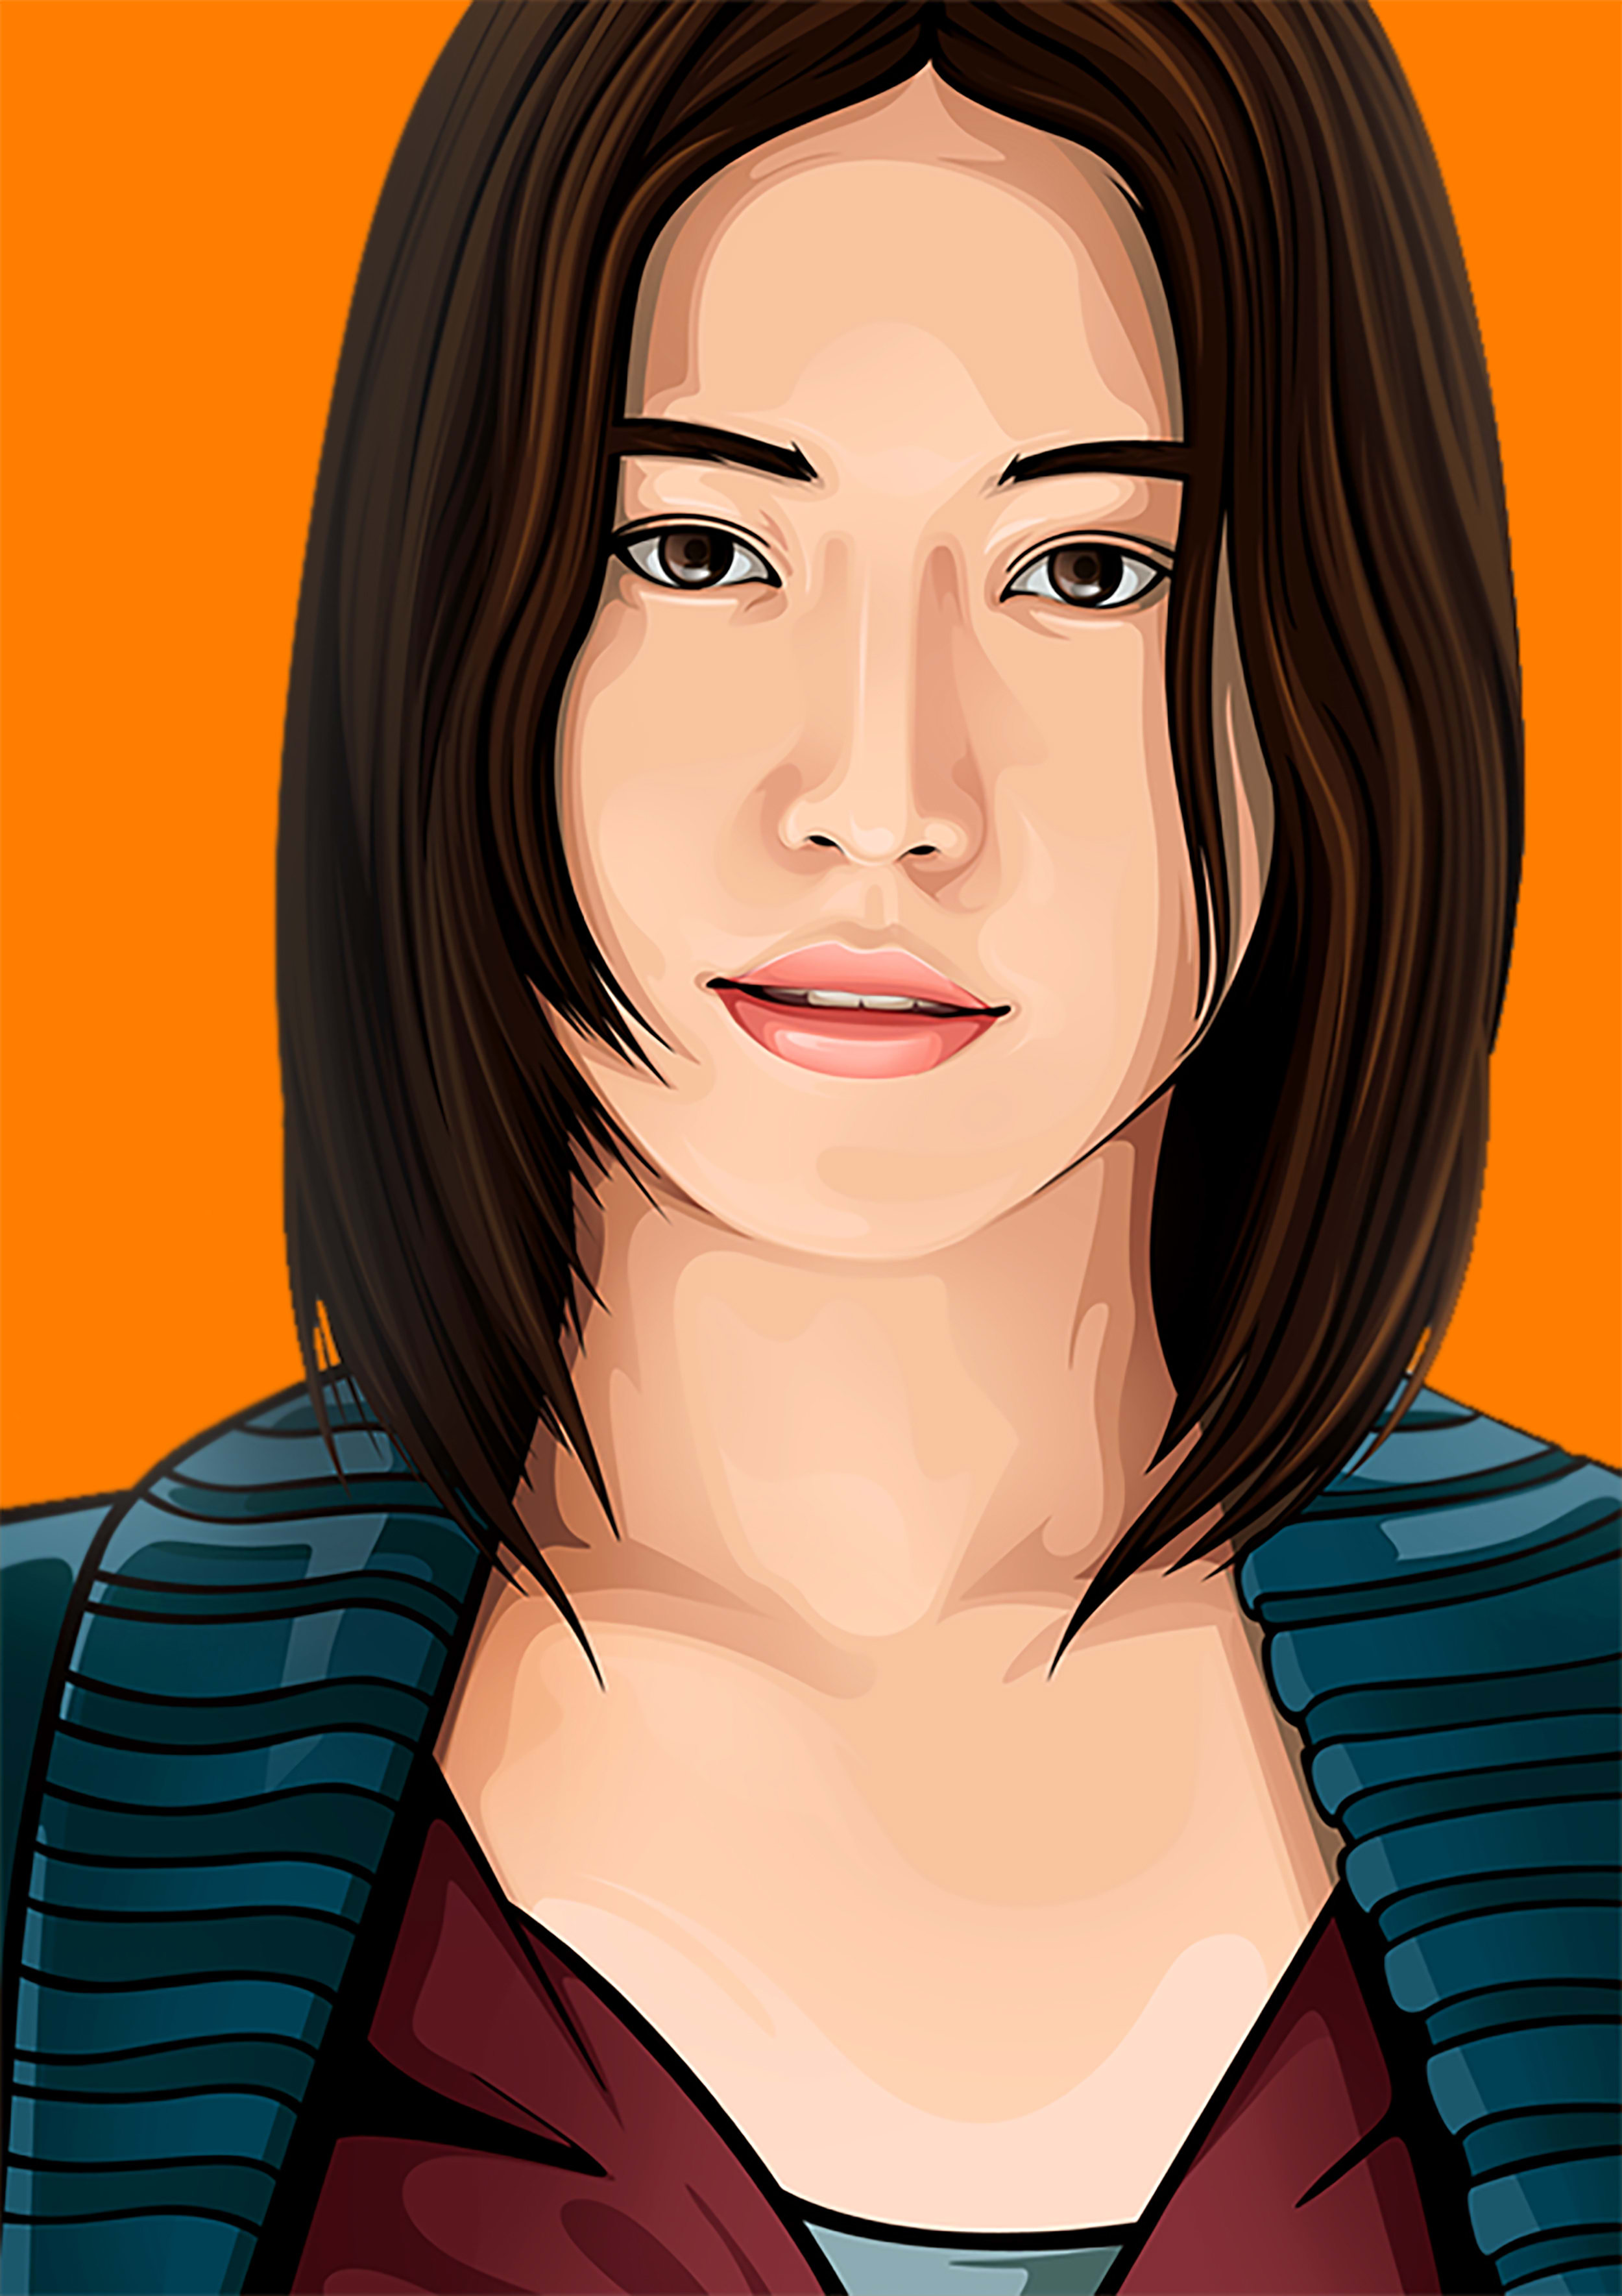 vexel art portrait vector illustration girl